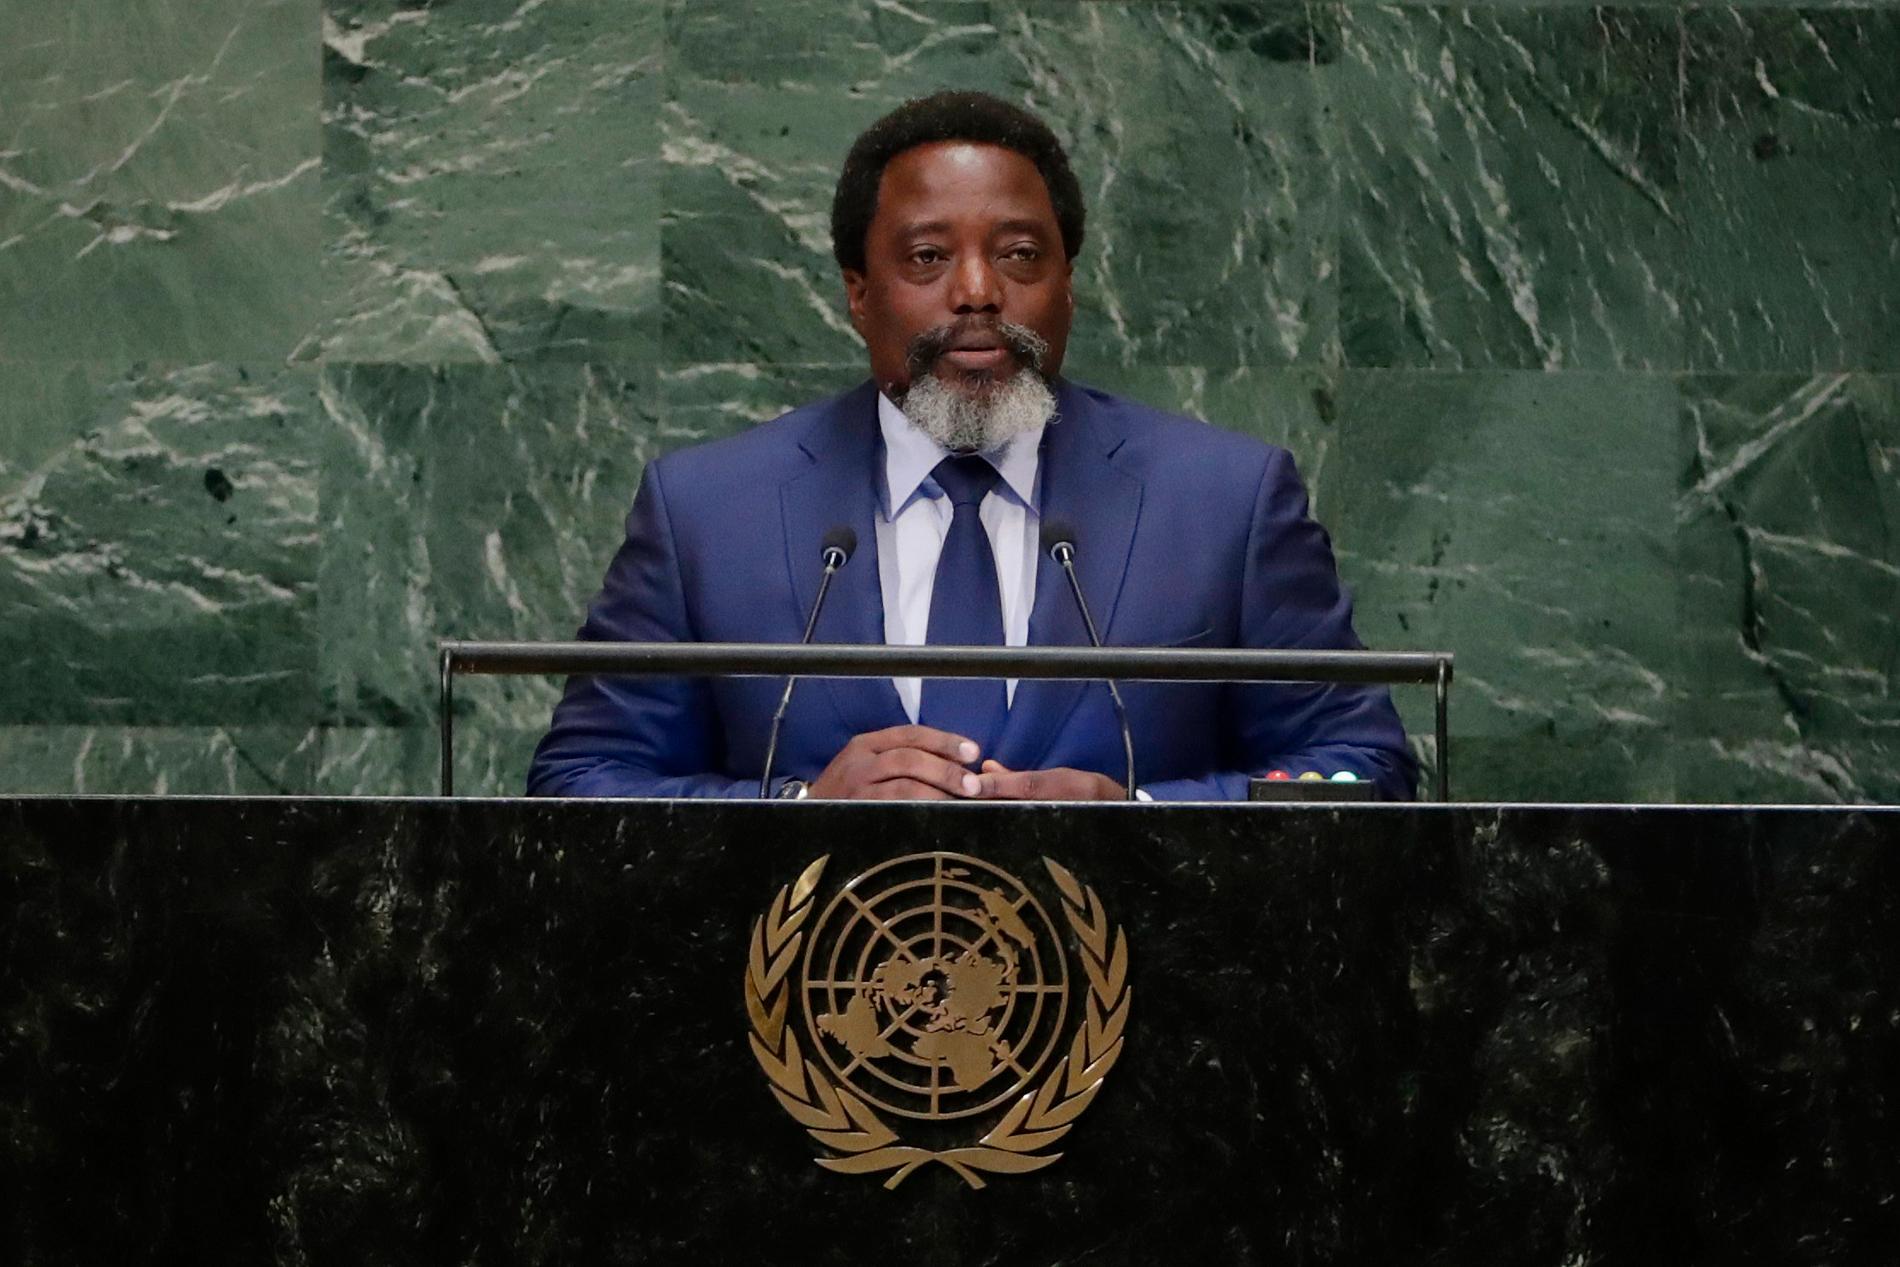 President Joseph Kabilas styre har blivit allt mer auktoritärt sedan han tog över makten 2001.